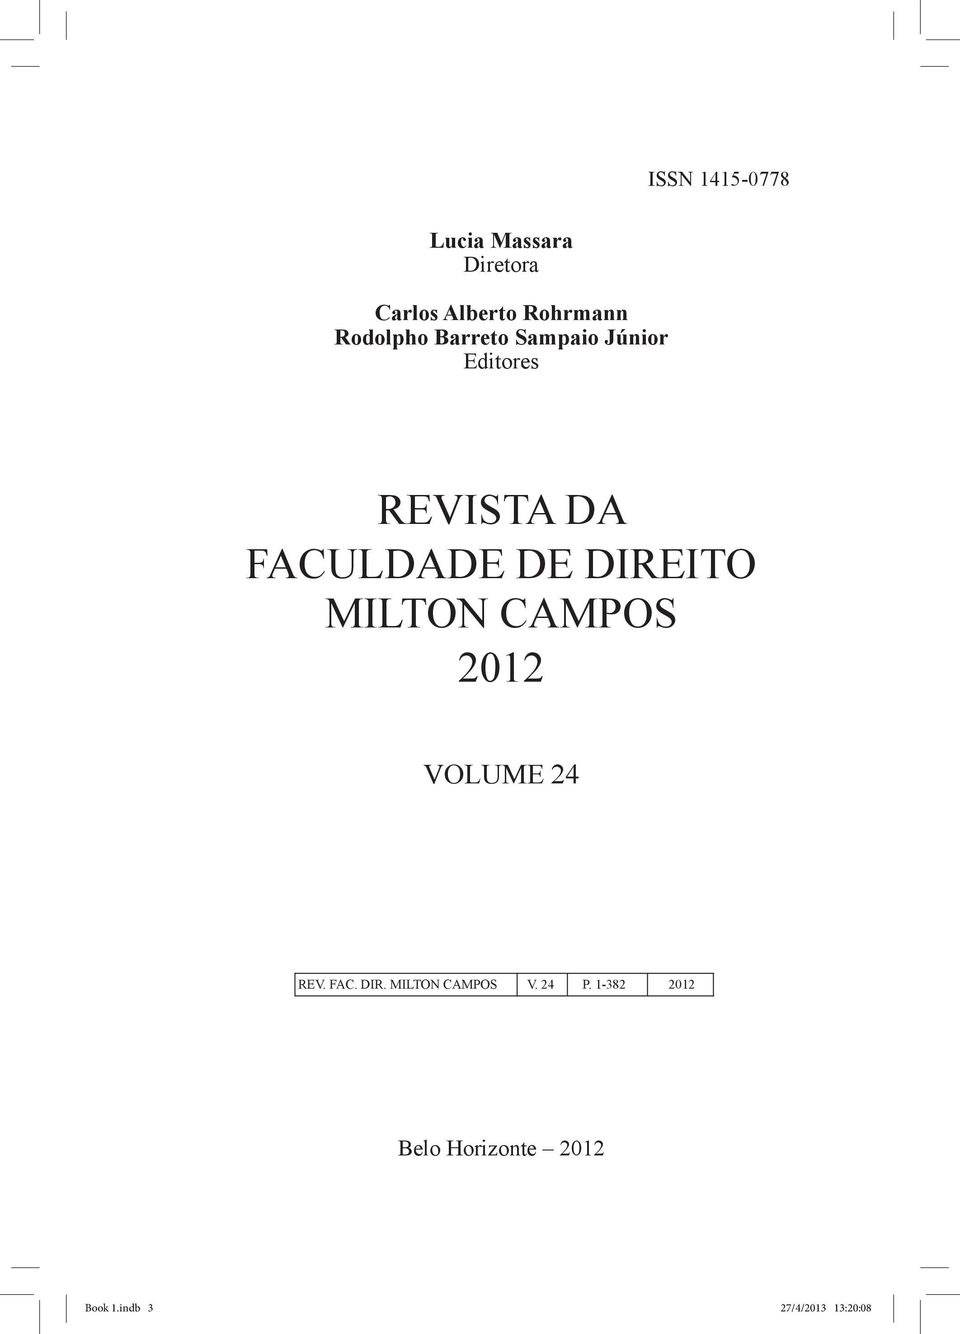 direito Milton campos 2012 Volume 24 REV. FAC. DIR.